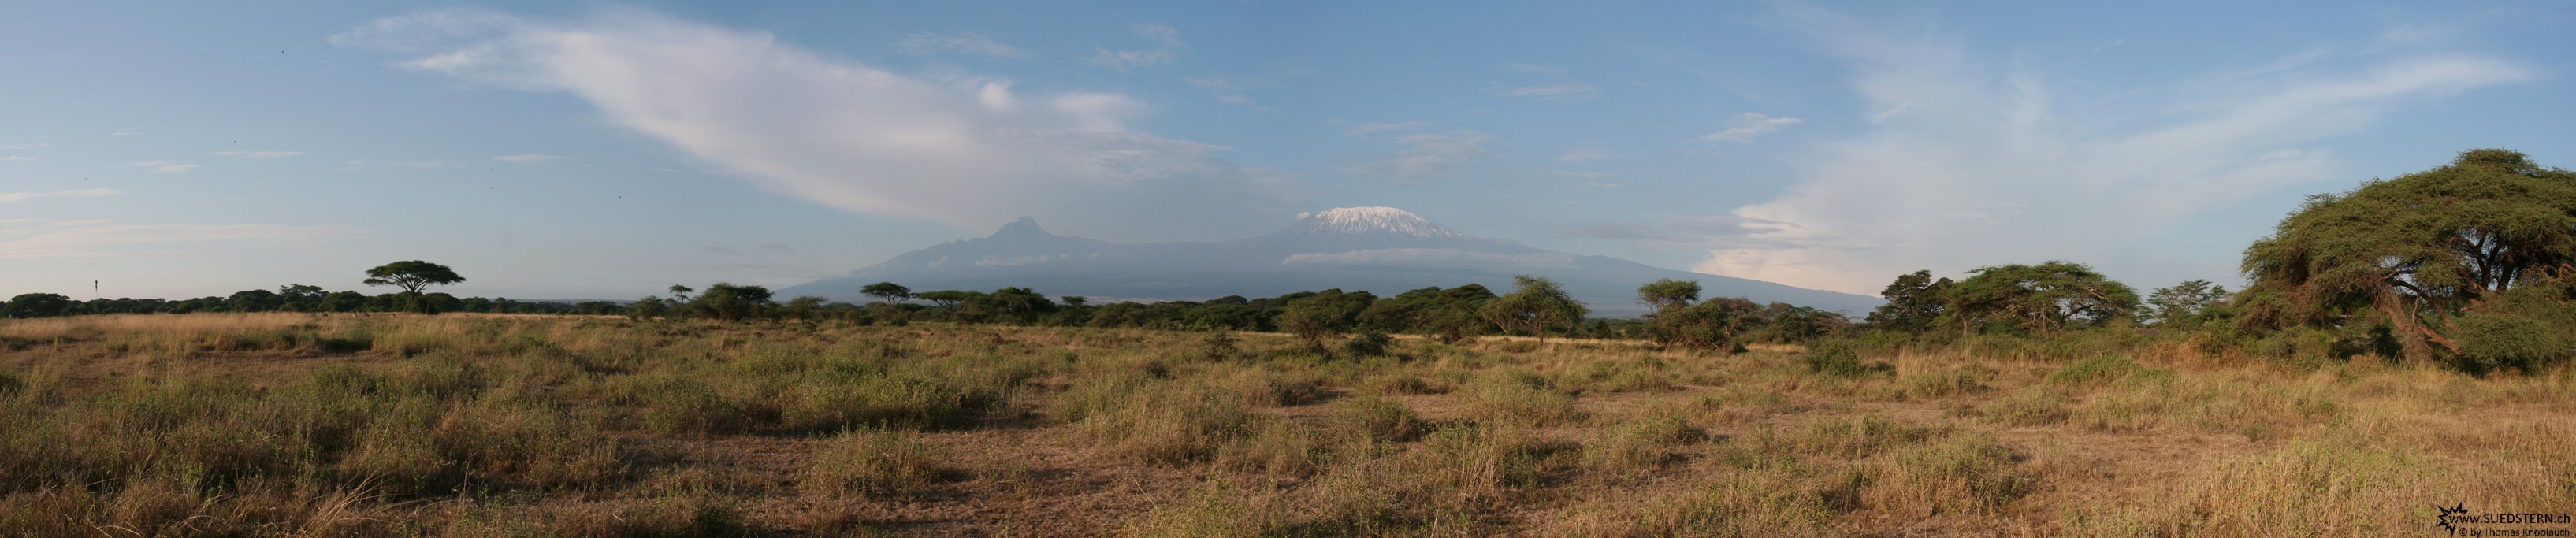 2007-04-12 - Kenya - Kimana Panorama - Kilimanjaro